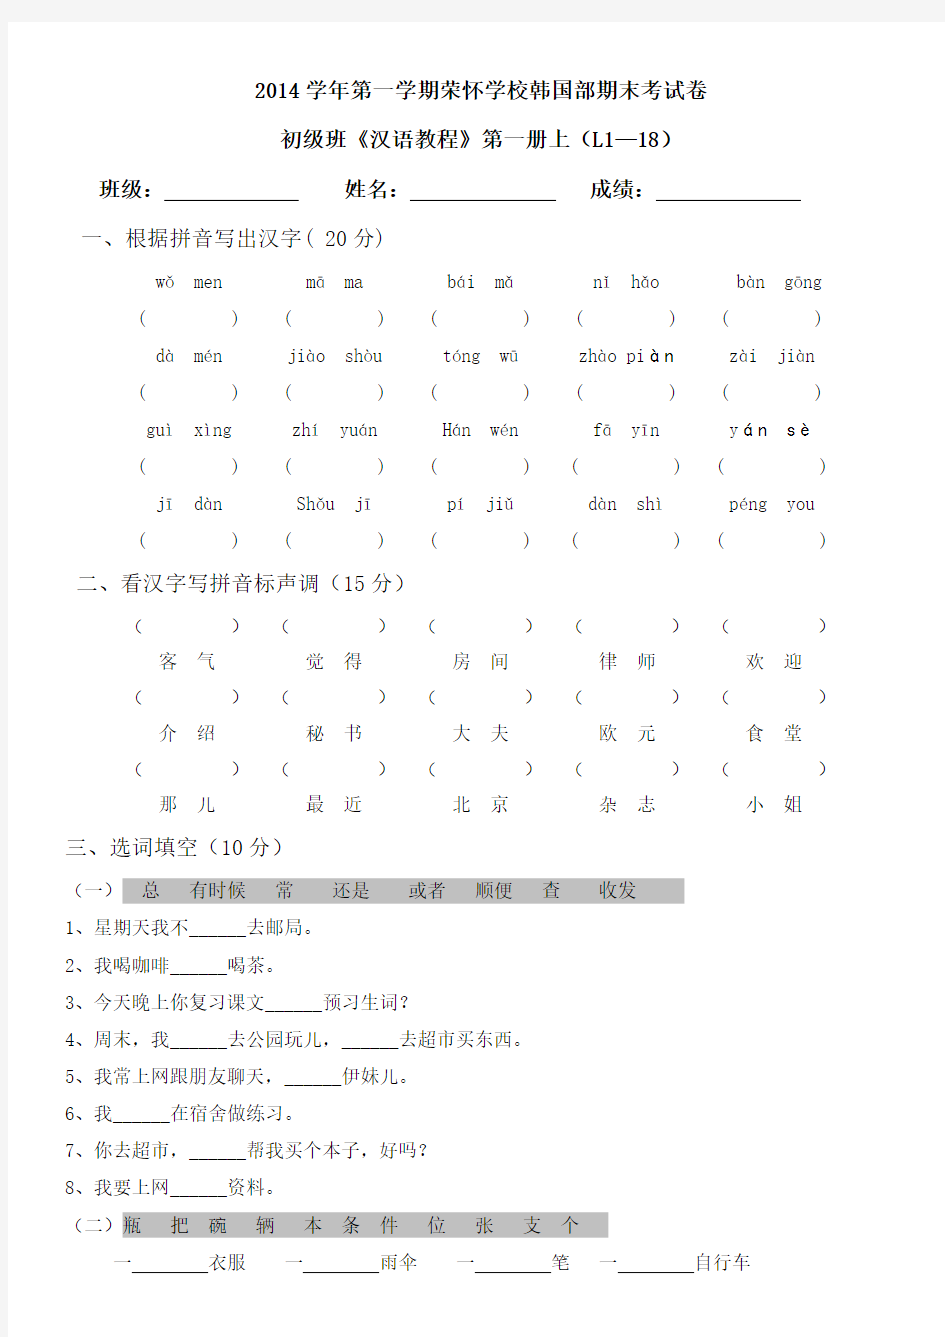 对外汉语《汉语教程》第一册上L1-L18试卷